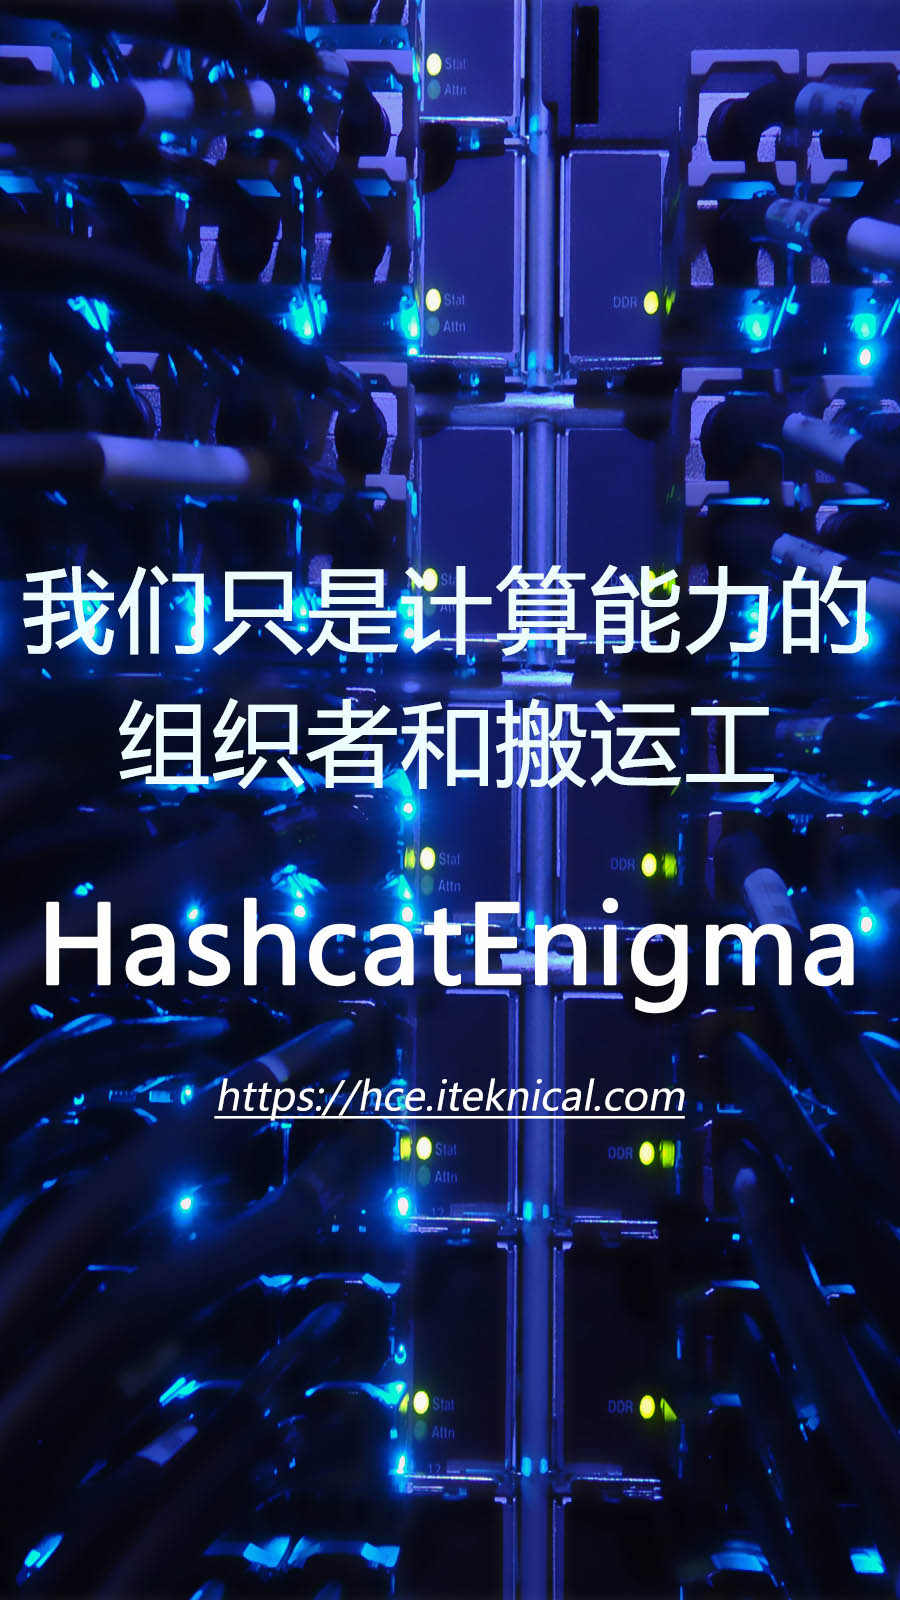 加入 HashcatEnigma 分布式